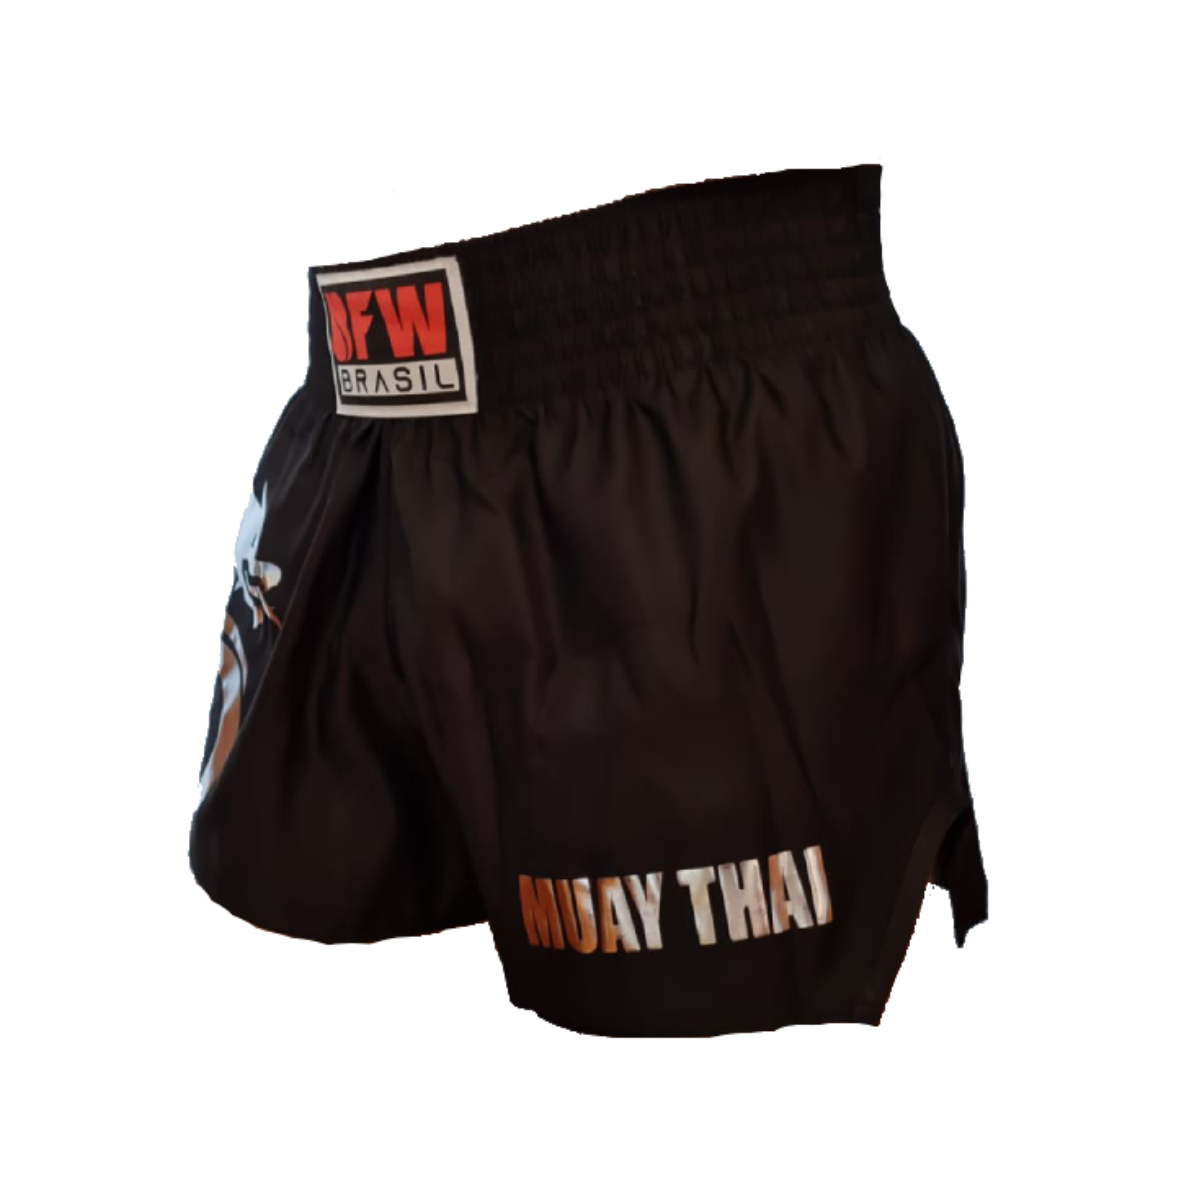 Calção Short Muay Thai em Poliéster  - Dragão Classic - BFW - Loja do Competidor